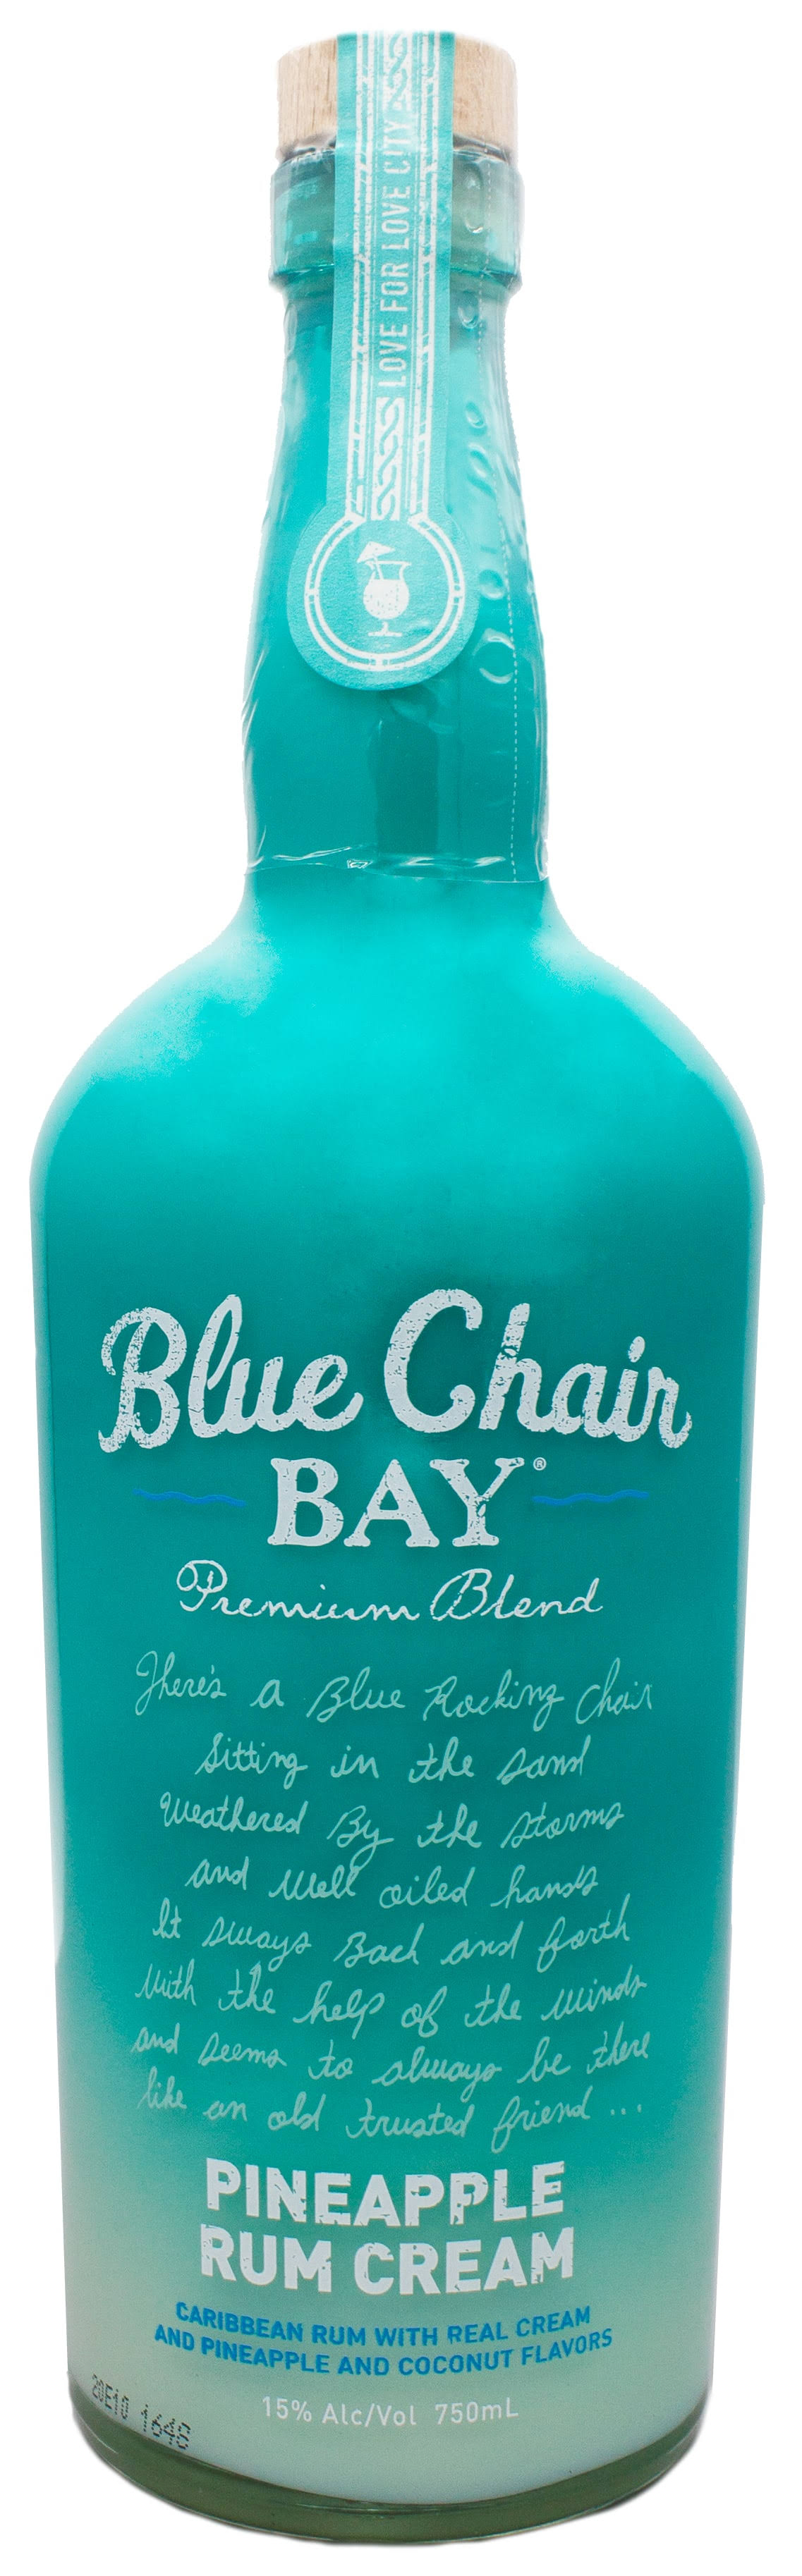 Blue Chair Bay Pineapple Rum Cream -750ml